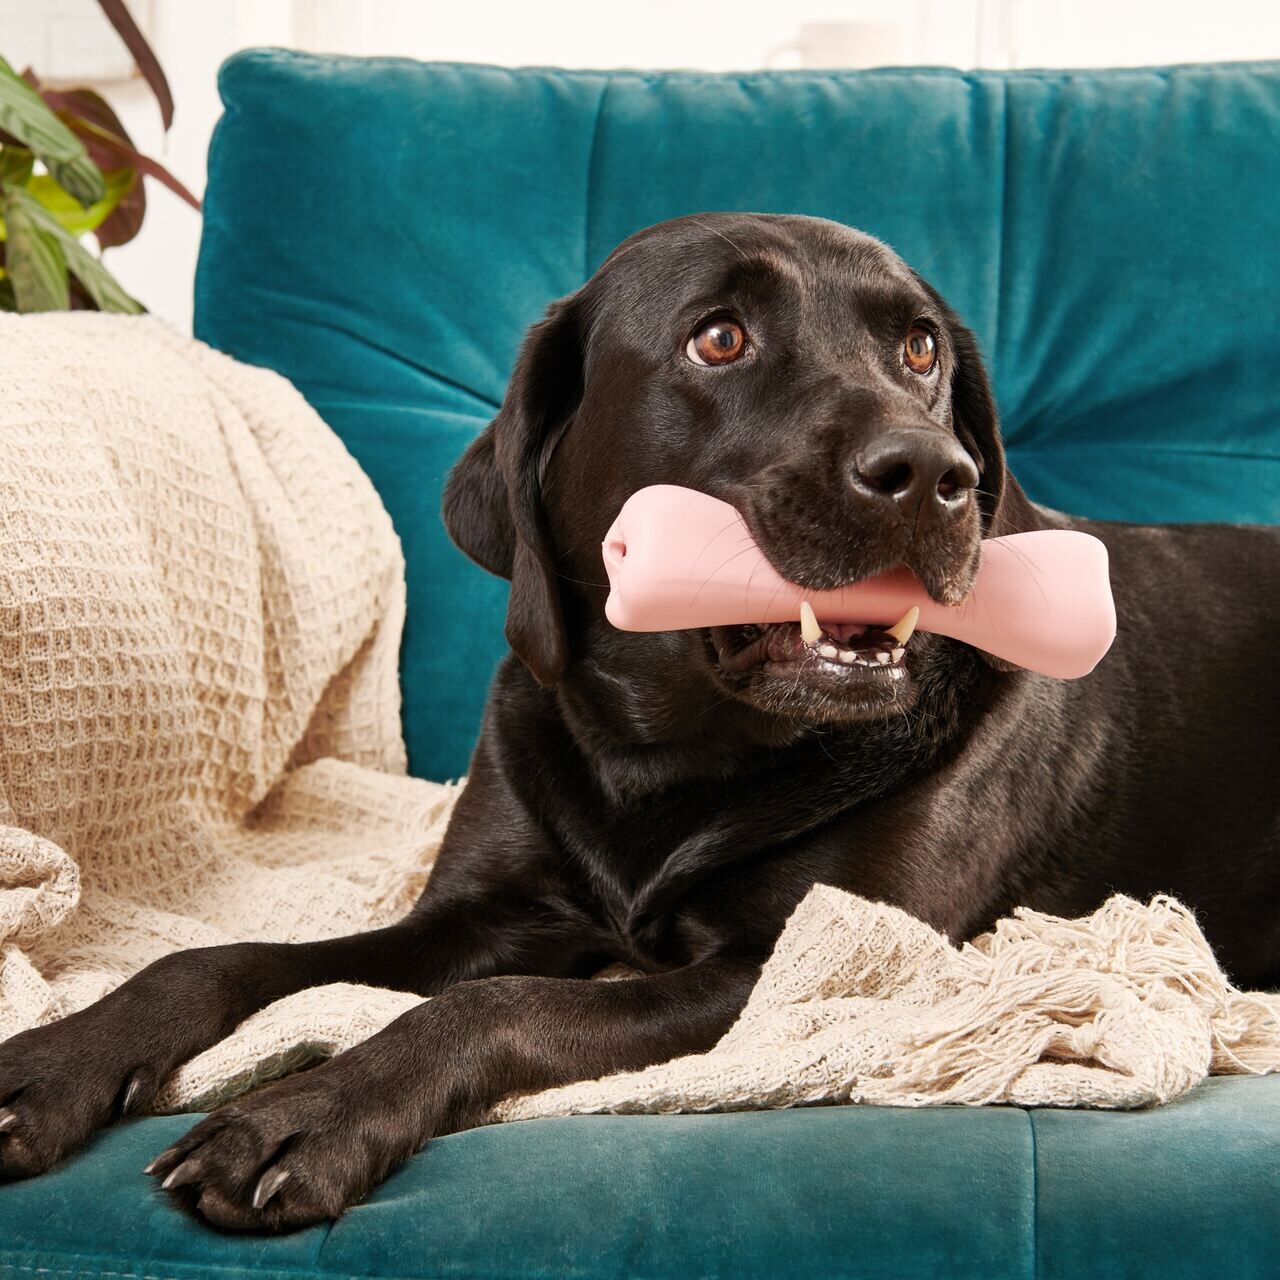 Beco-Treat-Bone-Snackknochen-aus-Naturkautschuk-schwarzer-Labrador-liegt-auf-tuerkiser-Couch-mit-Spielknochen-im-Maul-BT-75634